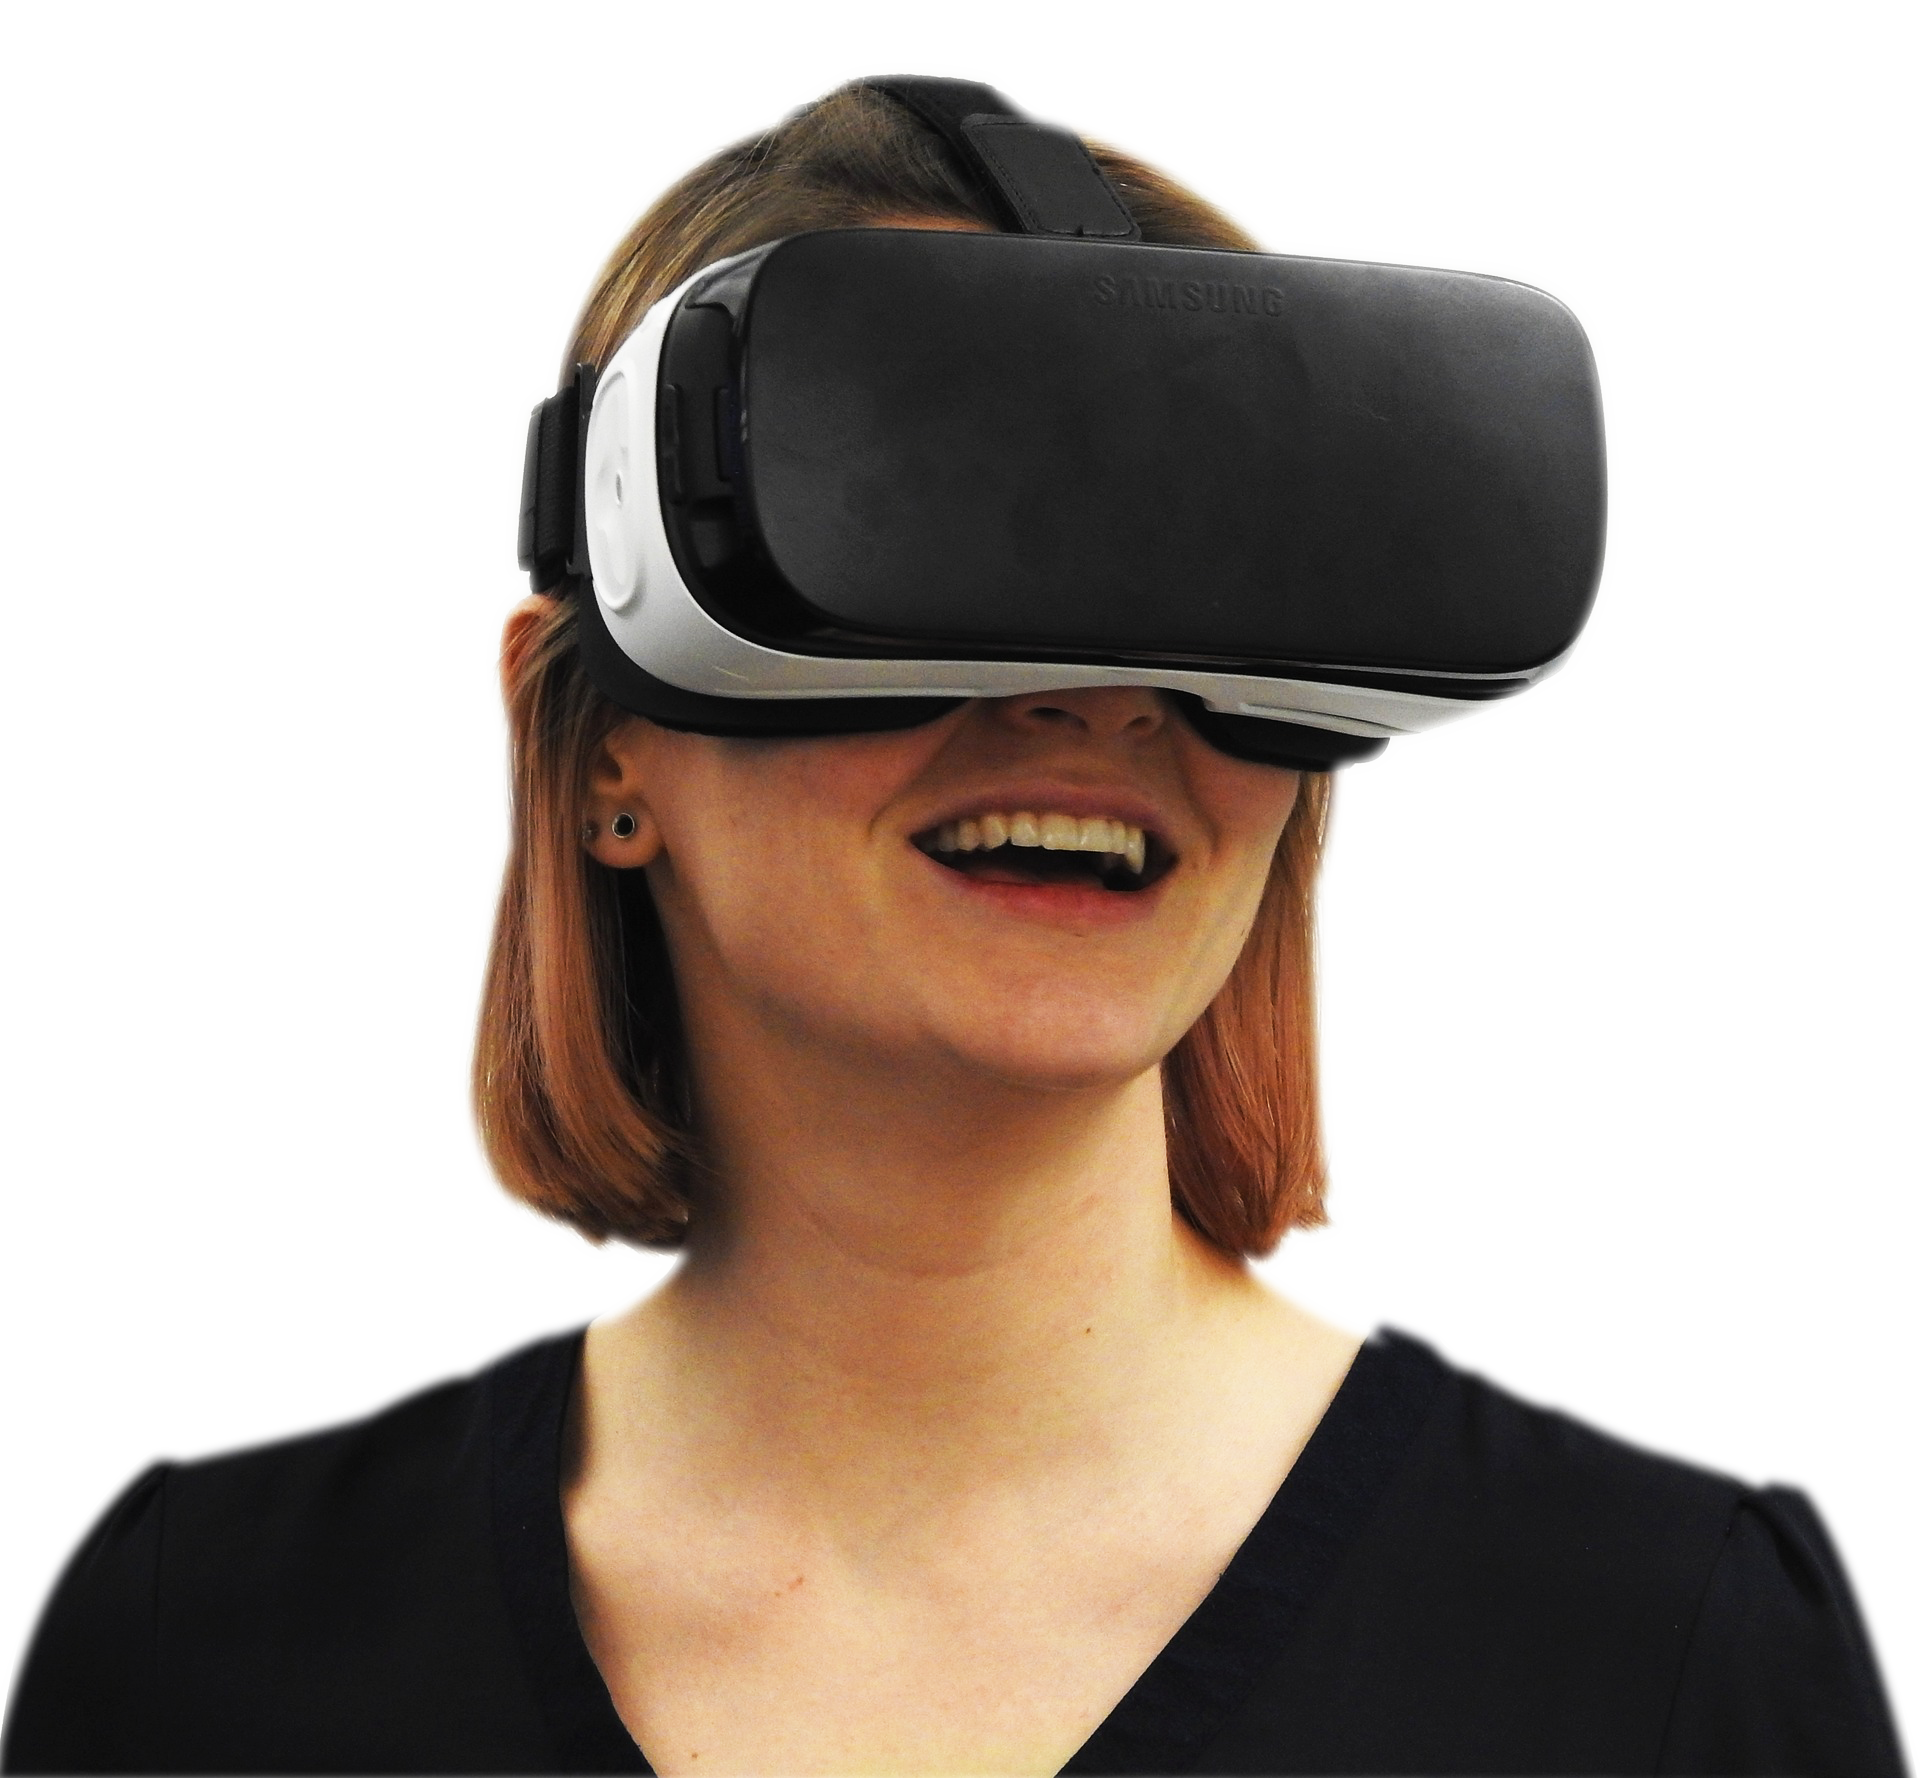 orbita realidad virtual experiencias virtuales tour virtual inmobiliario